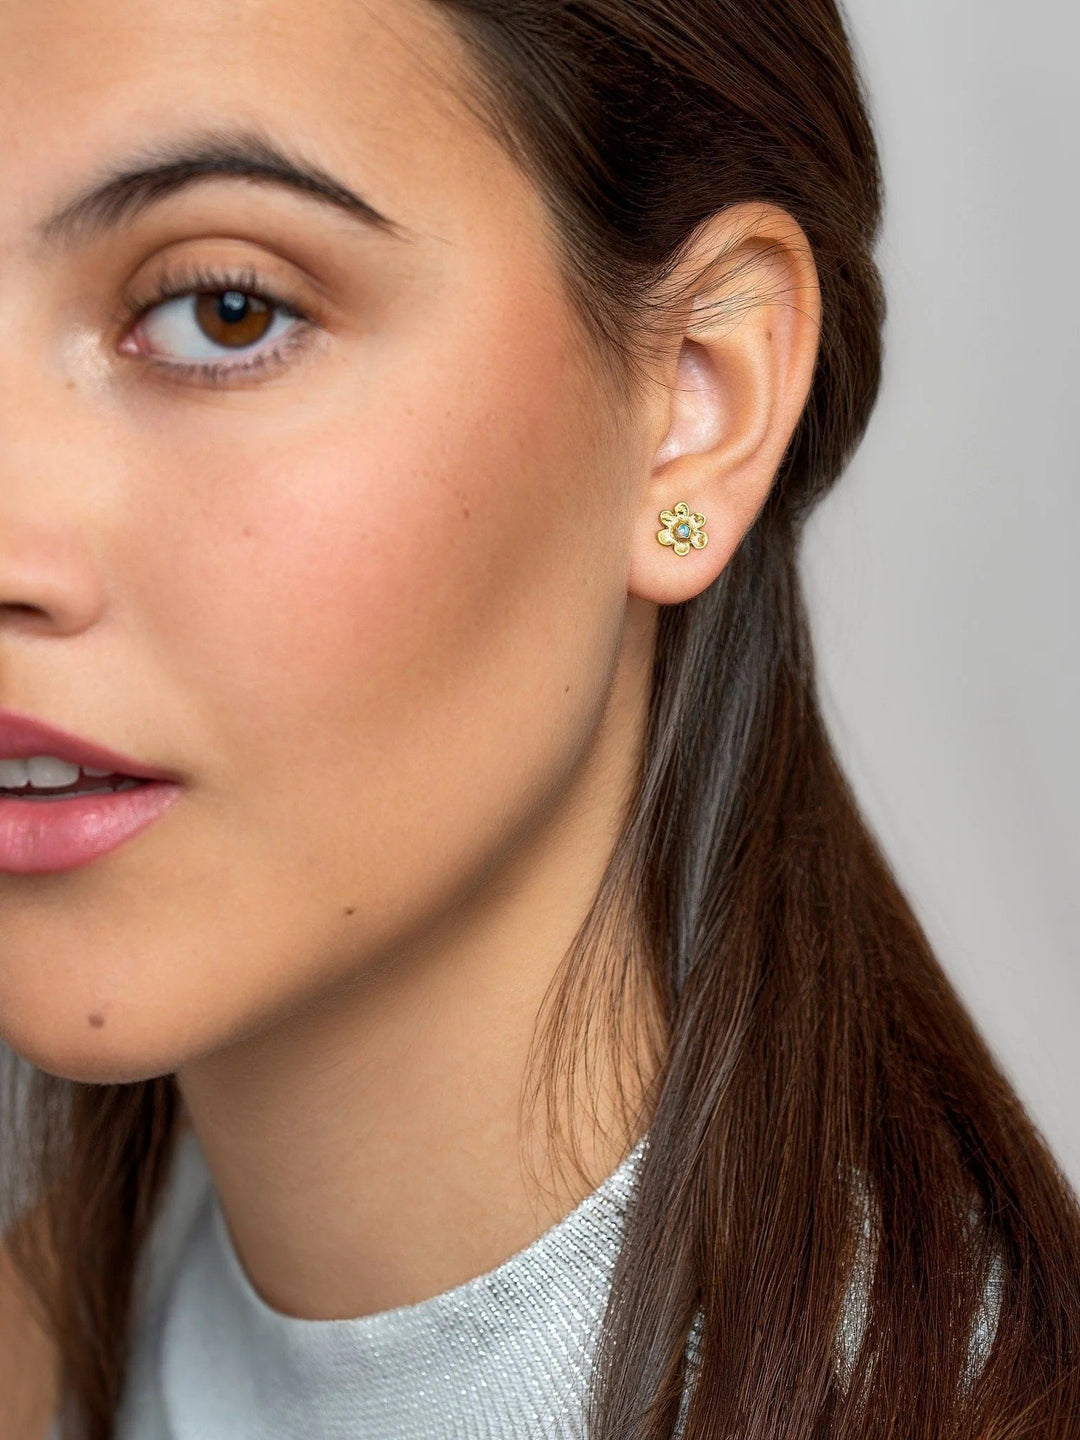 Luchi Flower Stud Earrings - 925 Sterling Silver Mattecool earringscute earringsLunai Jewelry